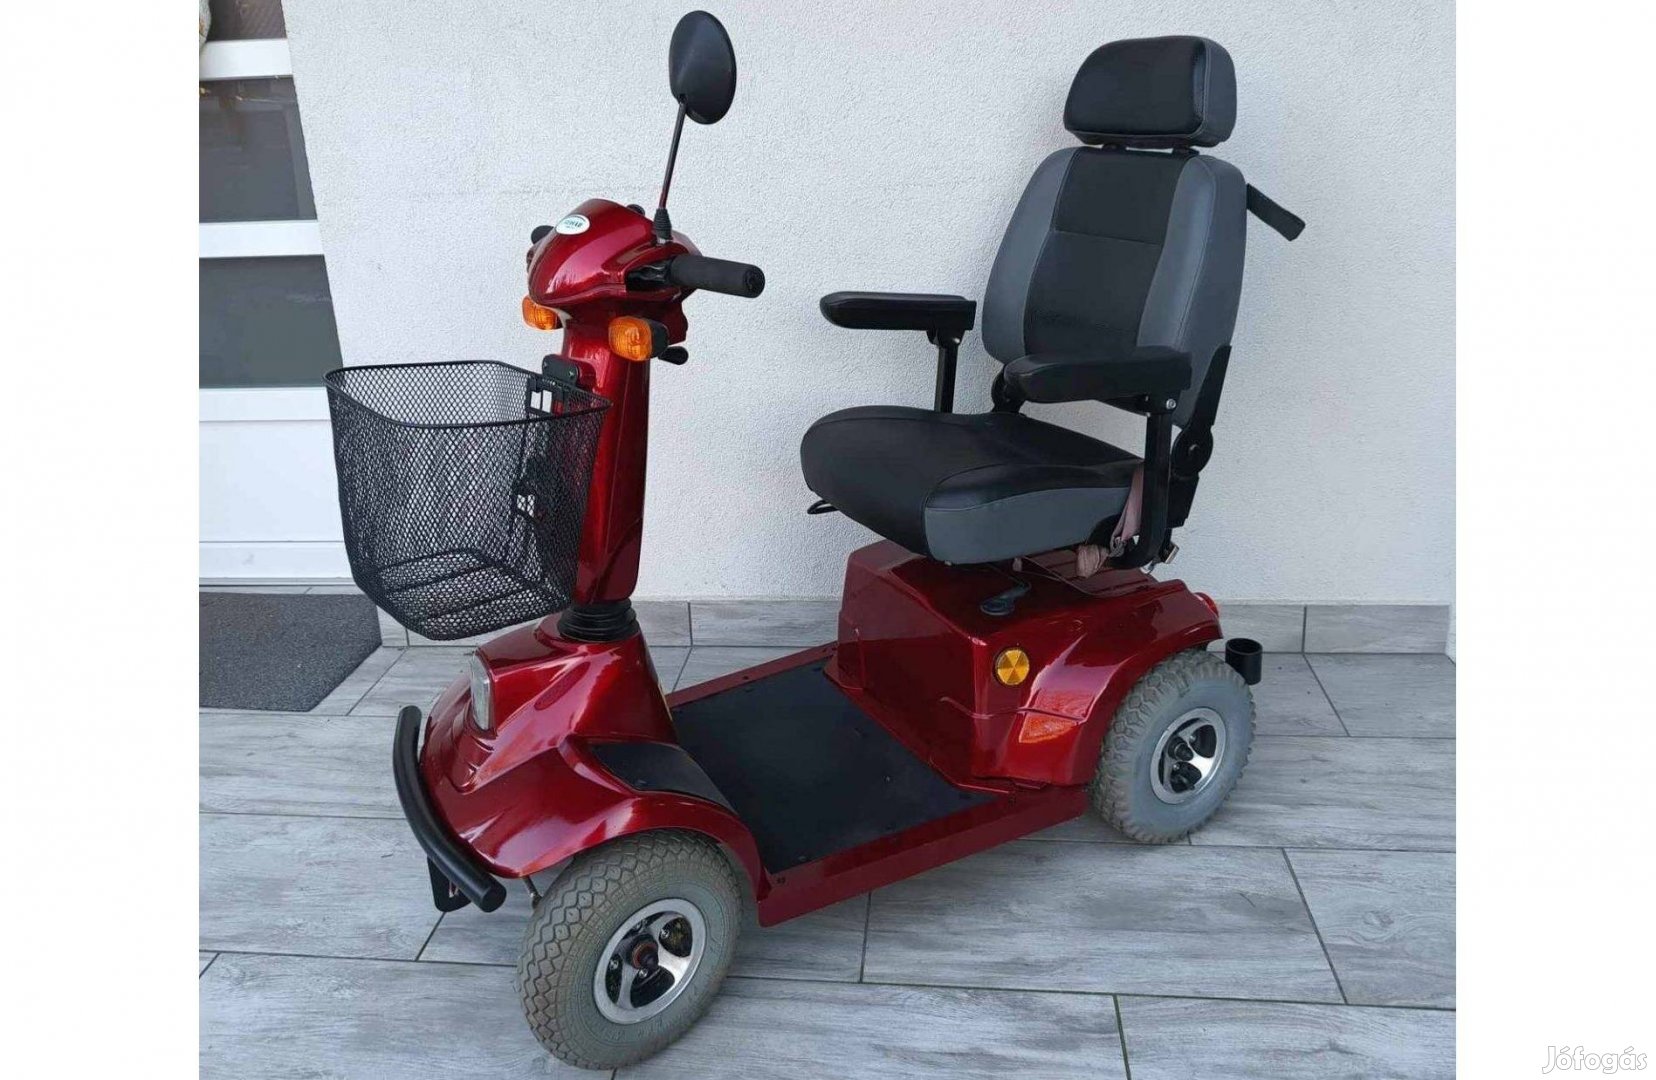 Garai házhozsz elektromos rehab moped rokkantkocsi rokkant kocsi